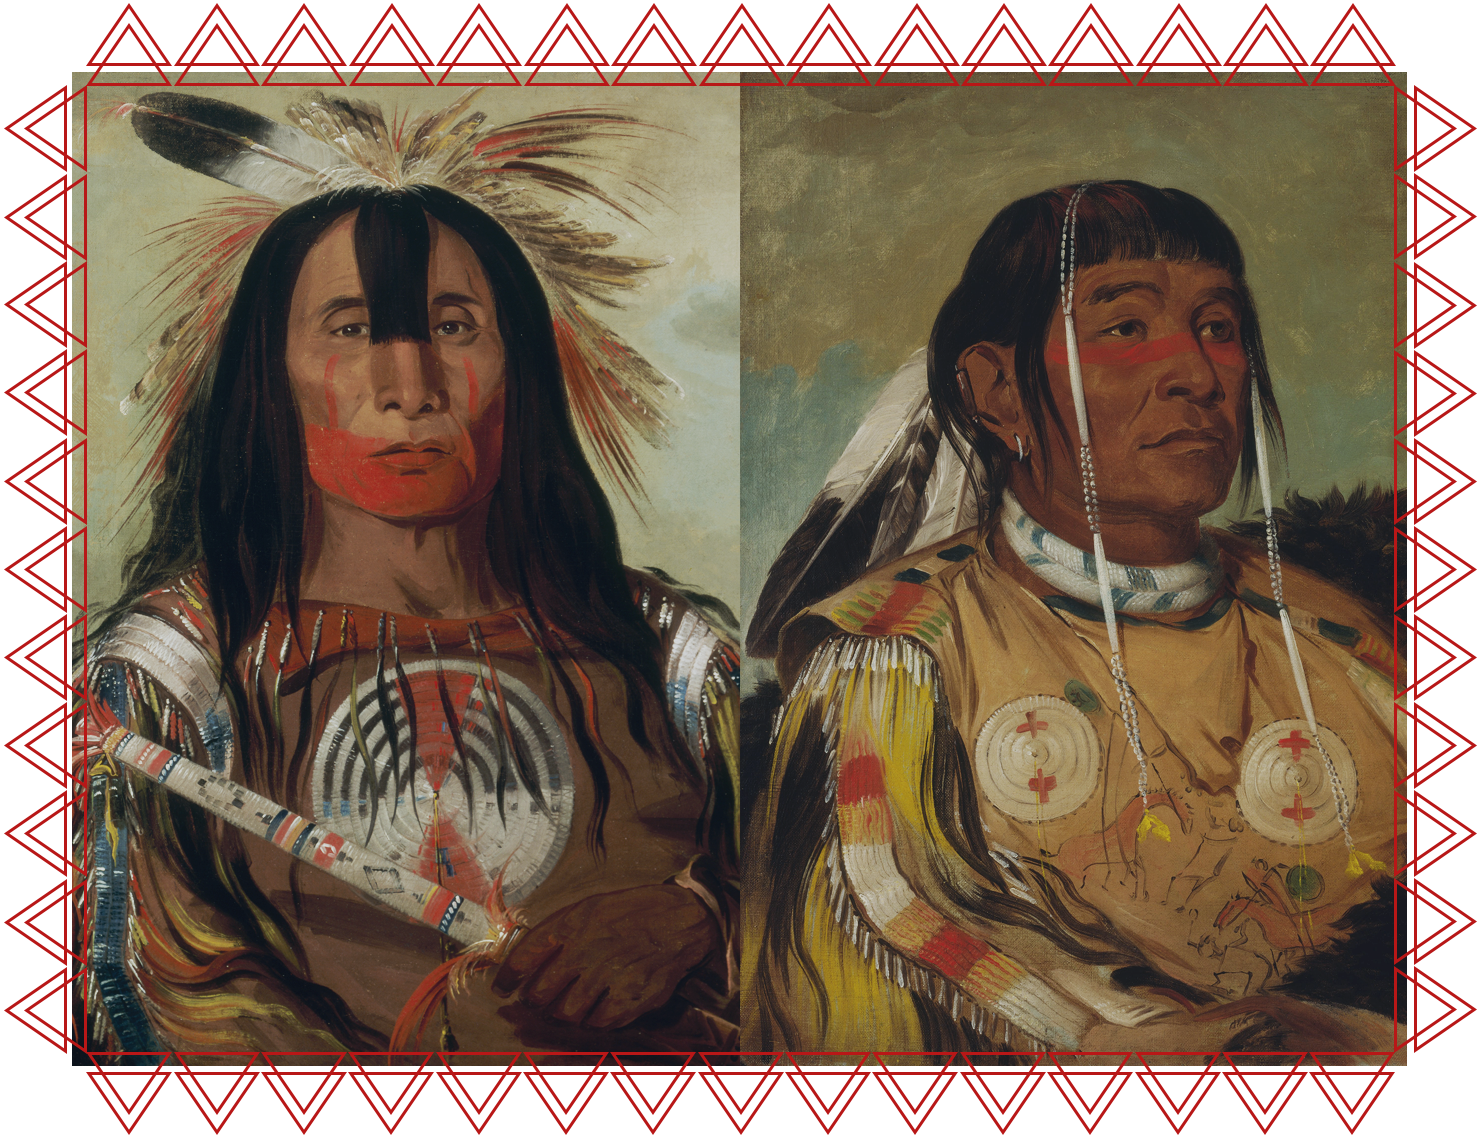 IACFS Schamanisches Wissen - Kontakt zu den Ahnen - Portrait von zwei indigenen Amerikas